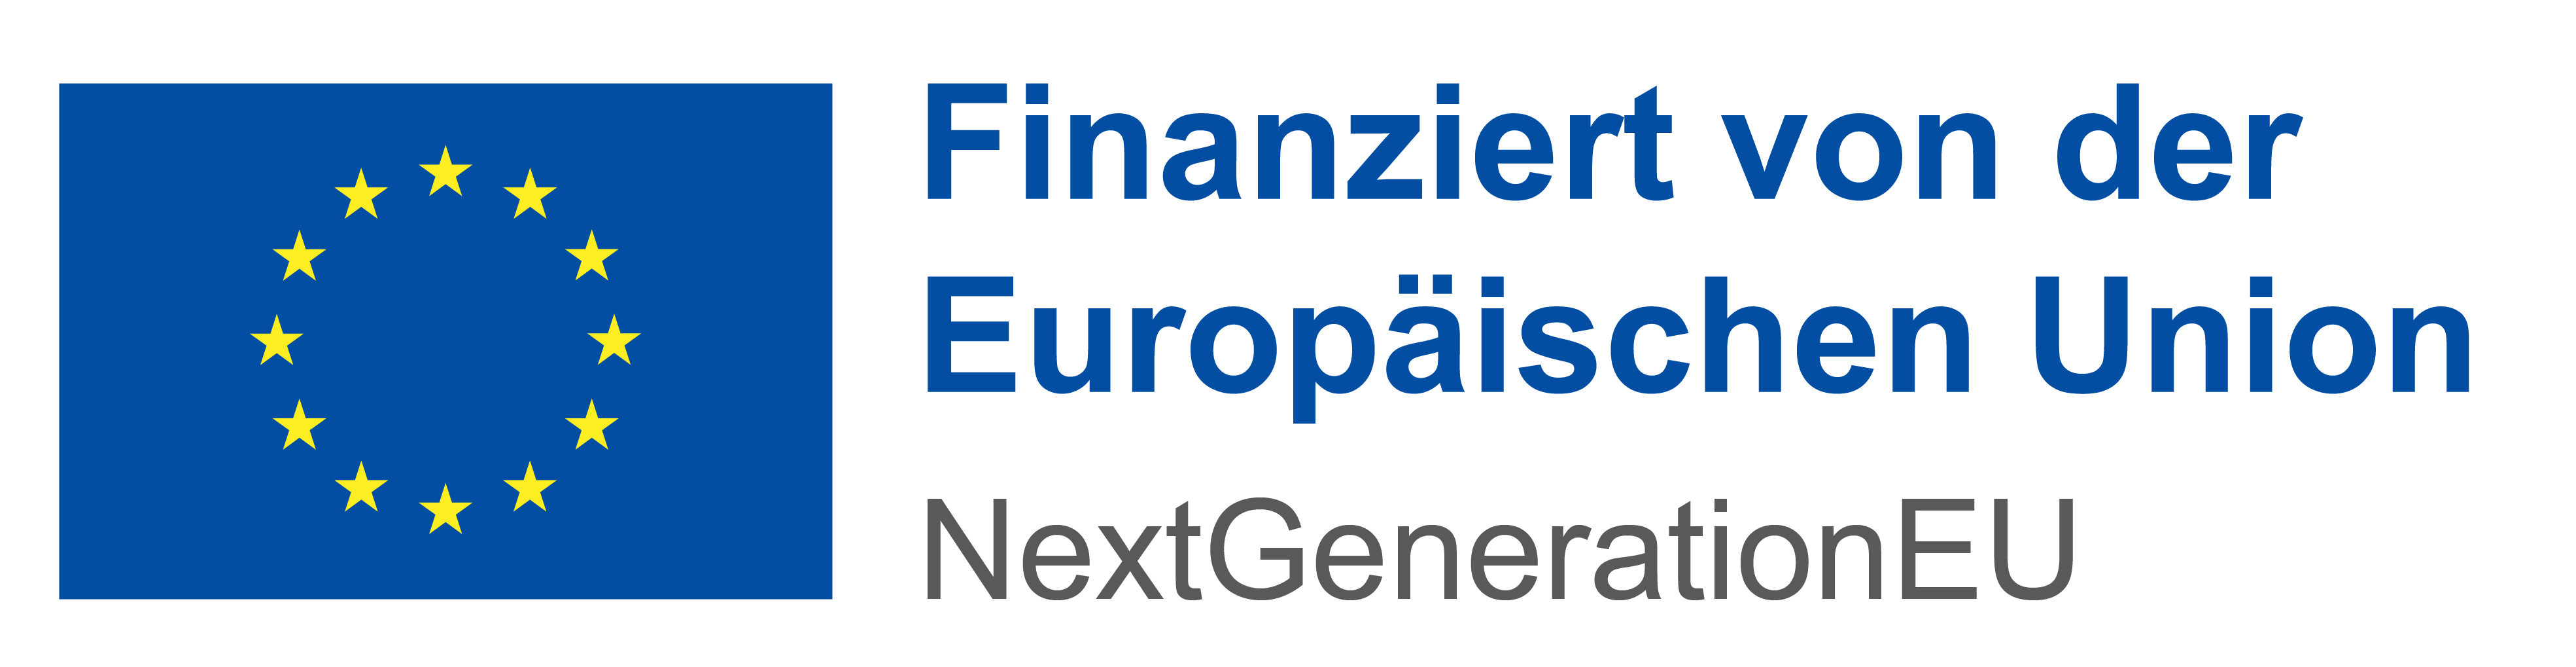 Finanziert von der Europäischen Unio - NextGenerationEU